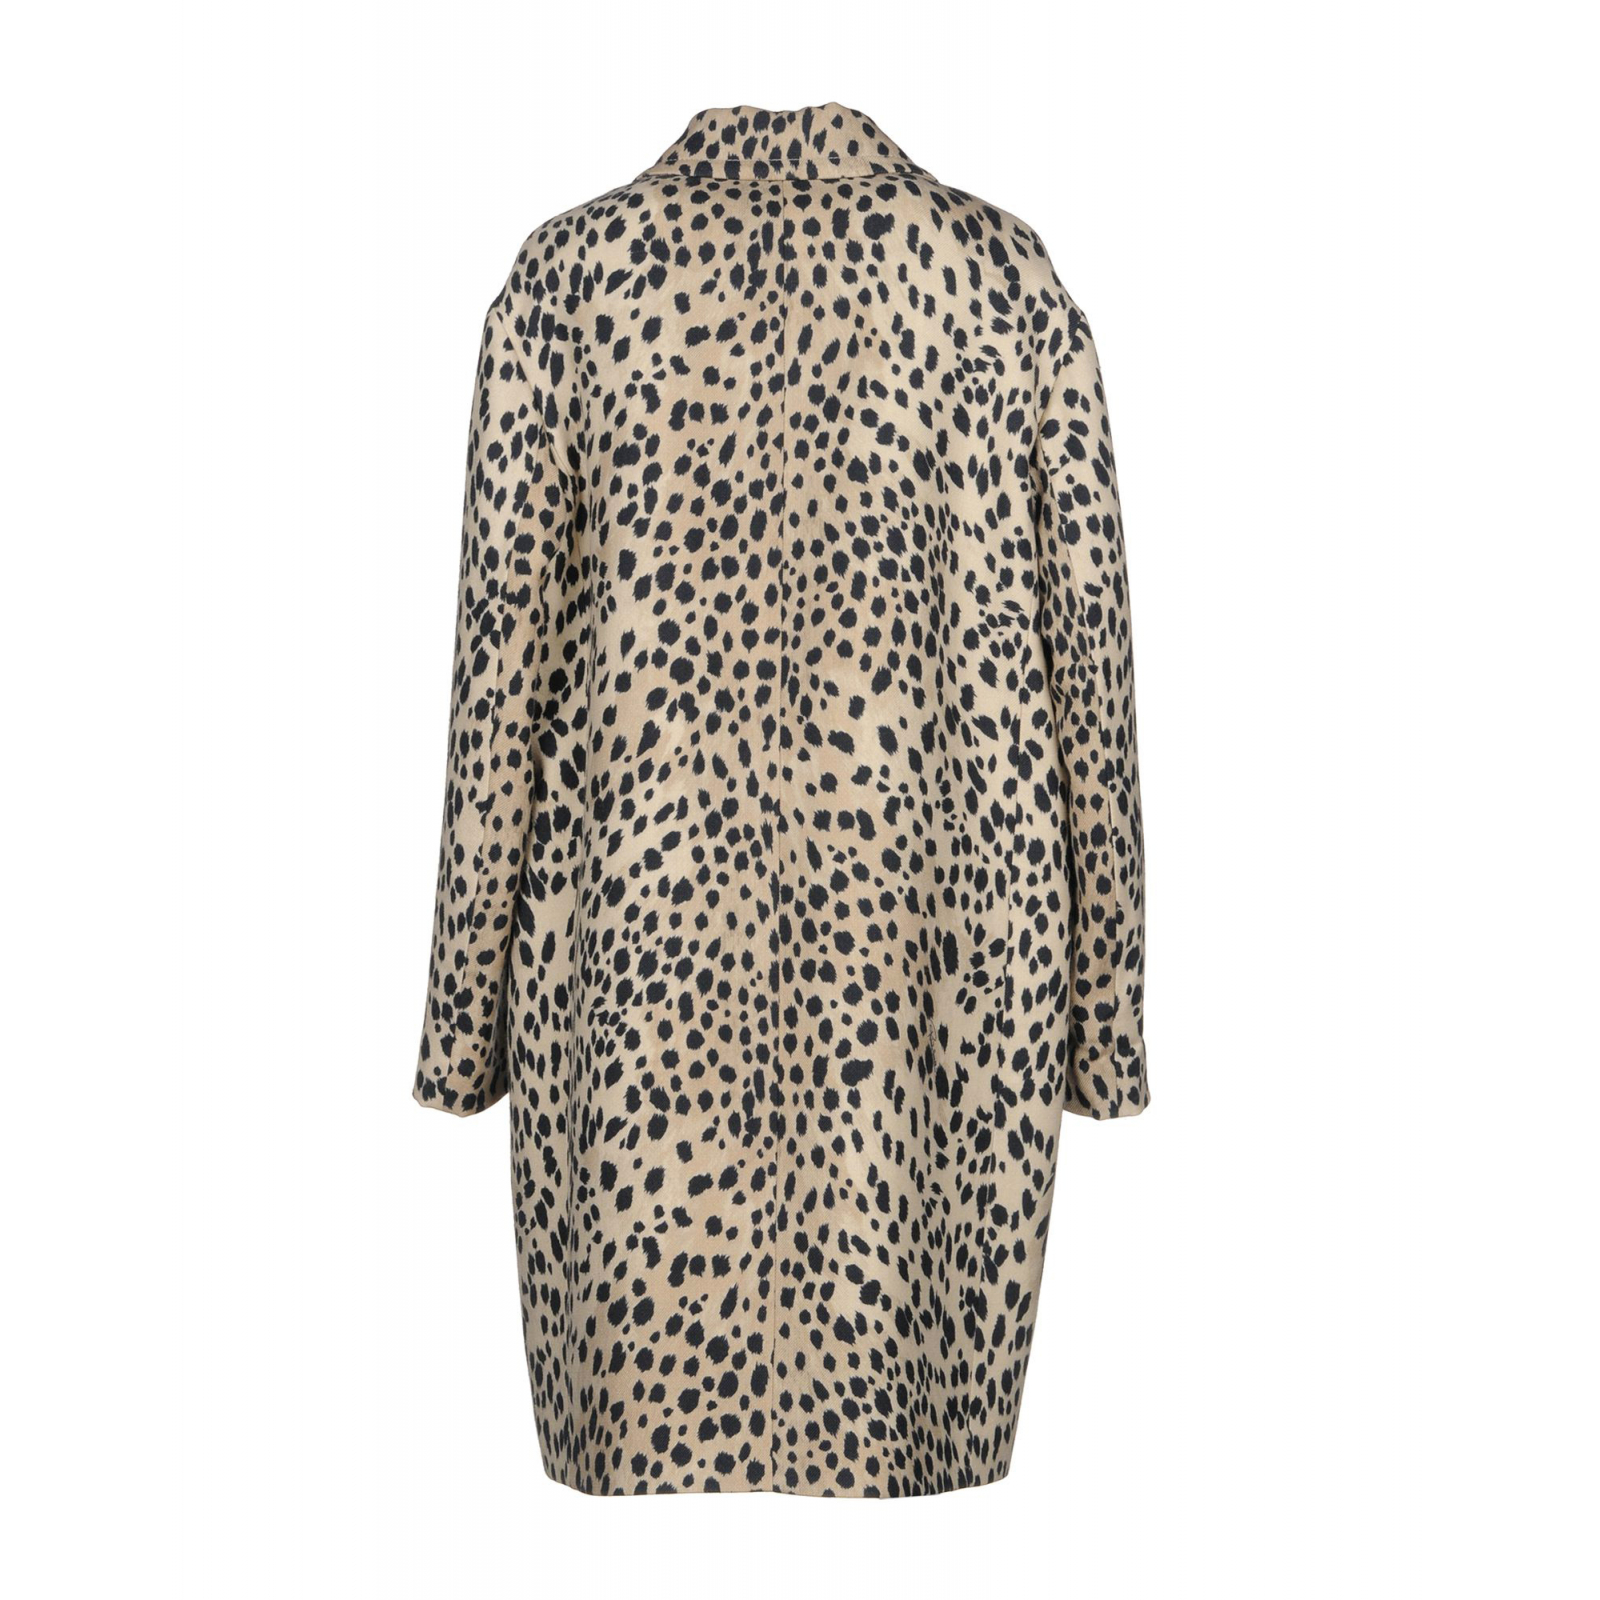 Wełniany płaszcz we wzór leoparda